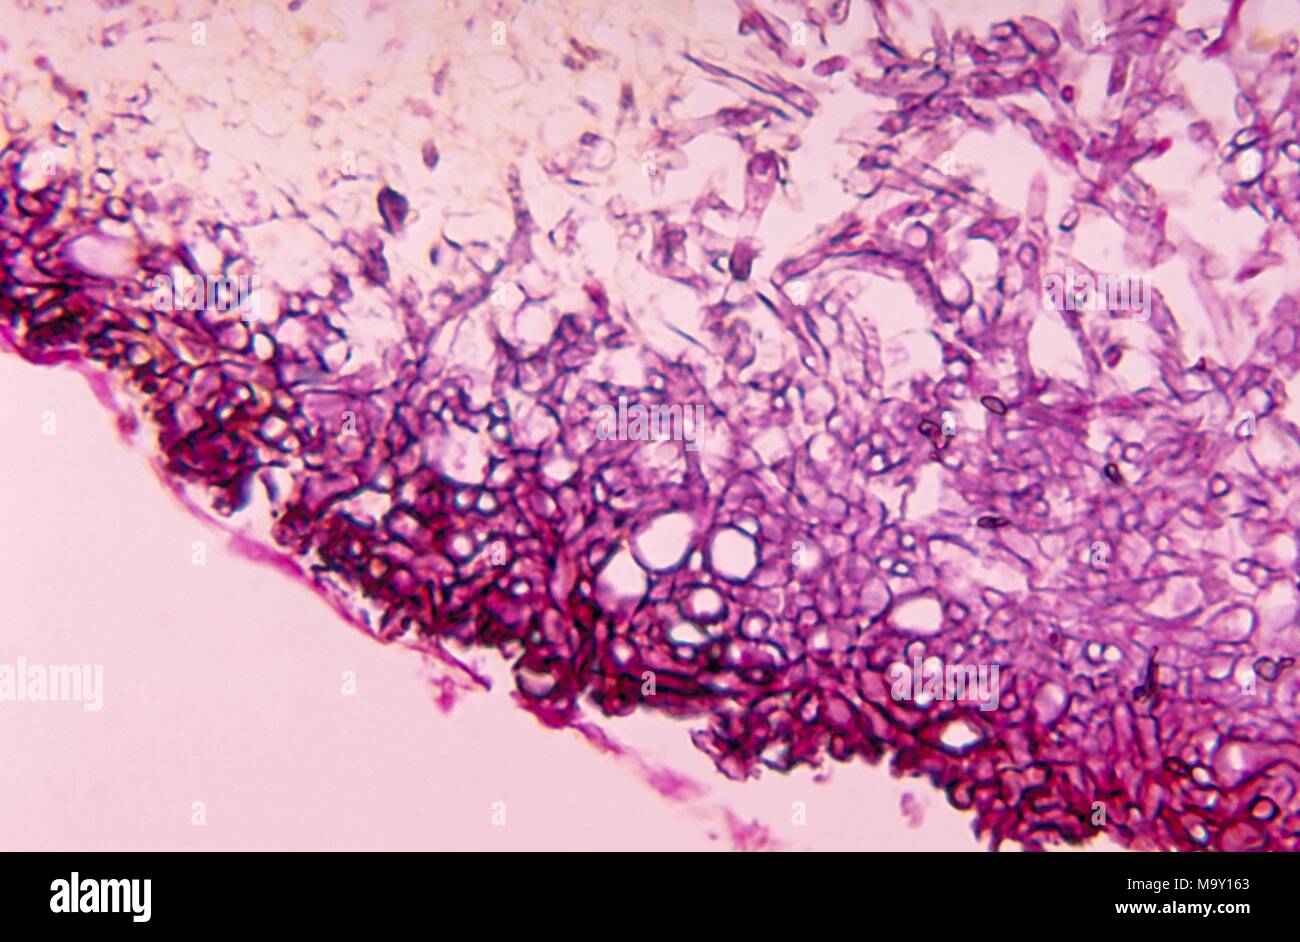 Variazioni istopatologiche in nero mycetoma granella a causa di infezioni da fungo Madurella grisea, 1970. Immagine cortesia di centri per il controllo delle malattie (CDC) / Dr Libero Ajello. Immagine cortesia CDC. () Foto Stock